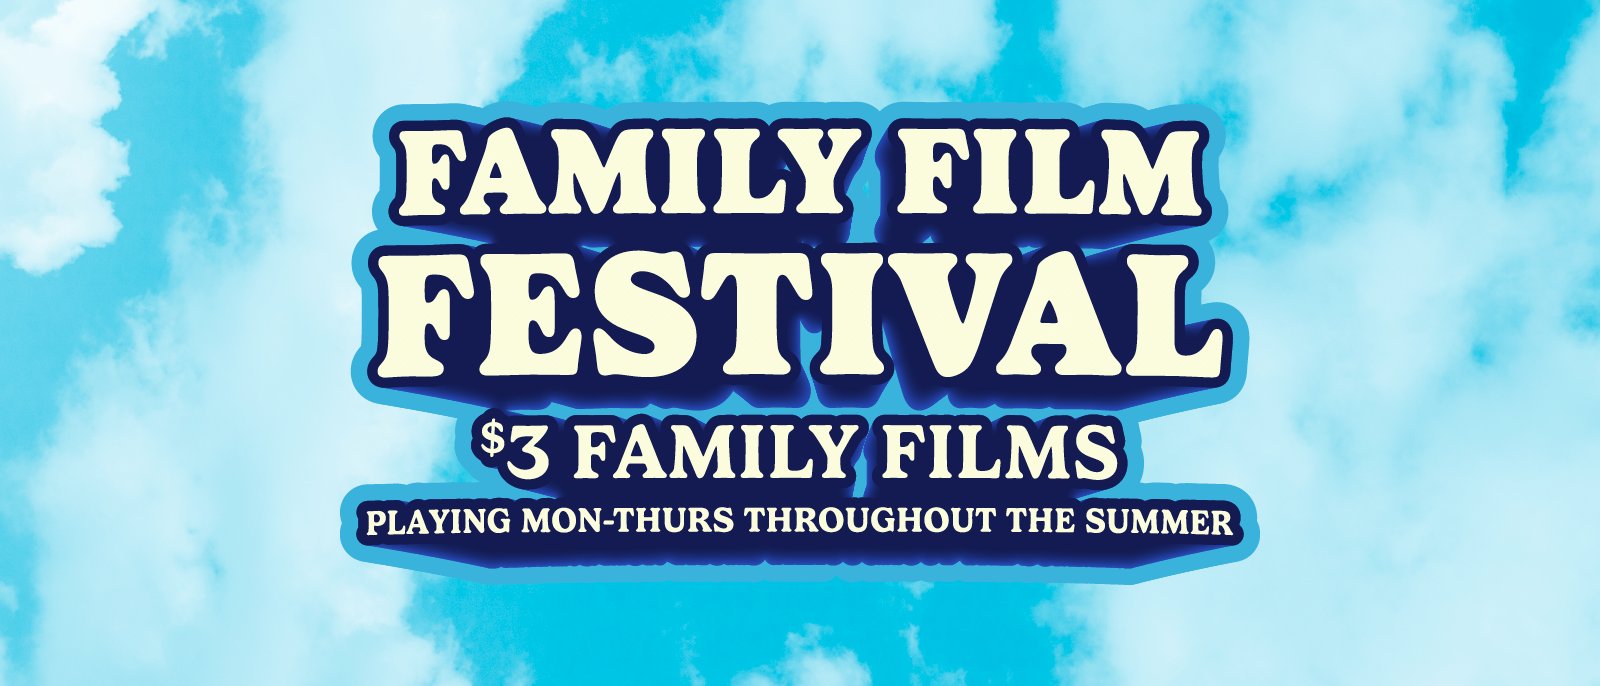 Family Film Festival